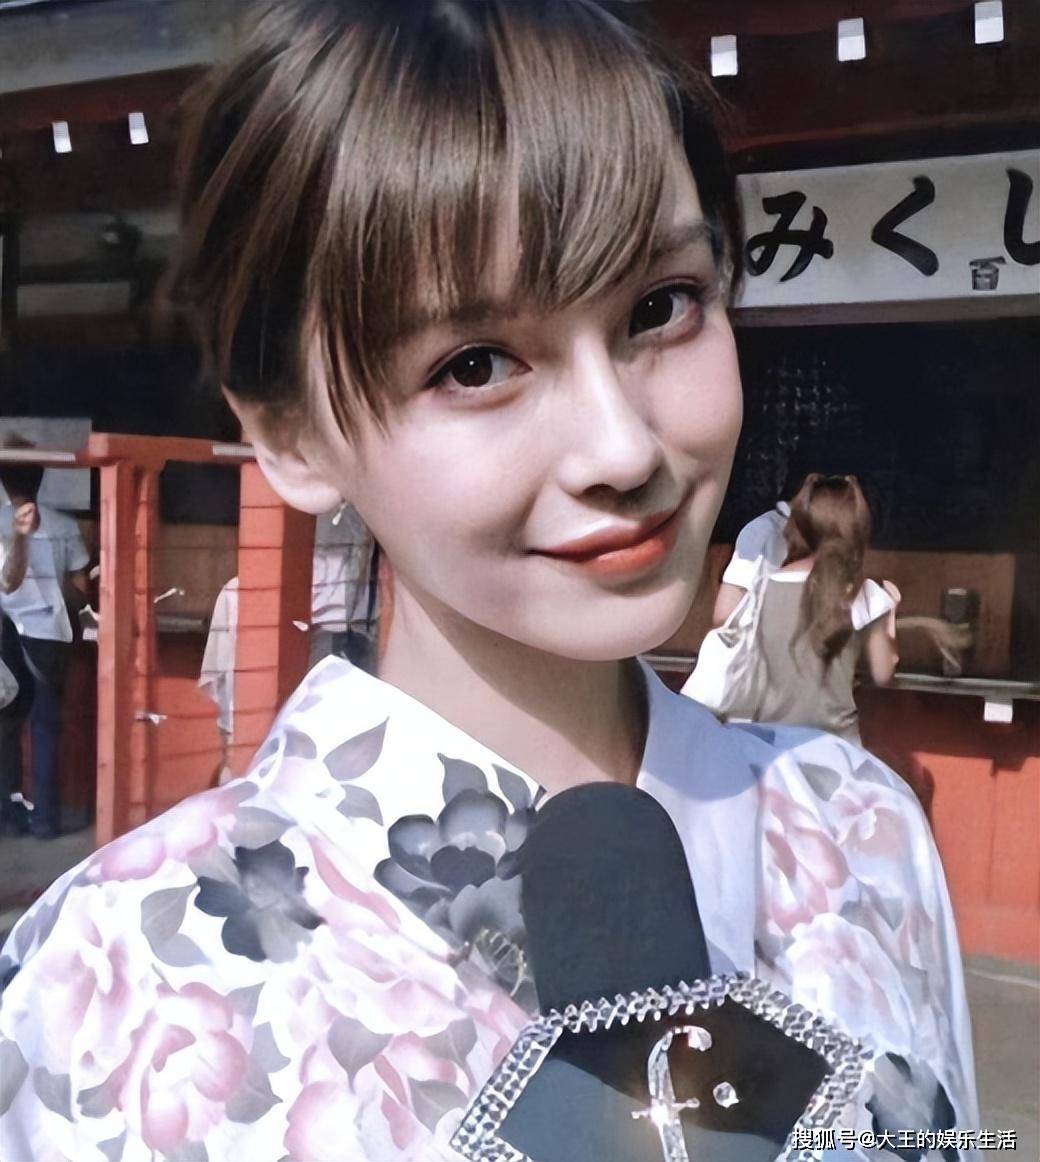 杨颖18岁在日本照片曝光,大口啃雪糕毫无形象,整容与否一看便知